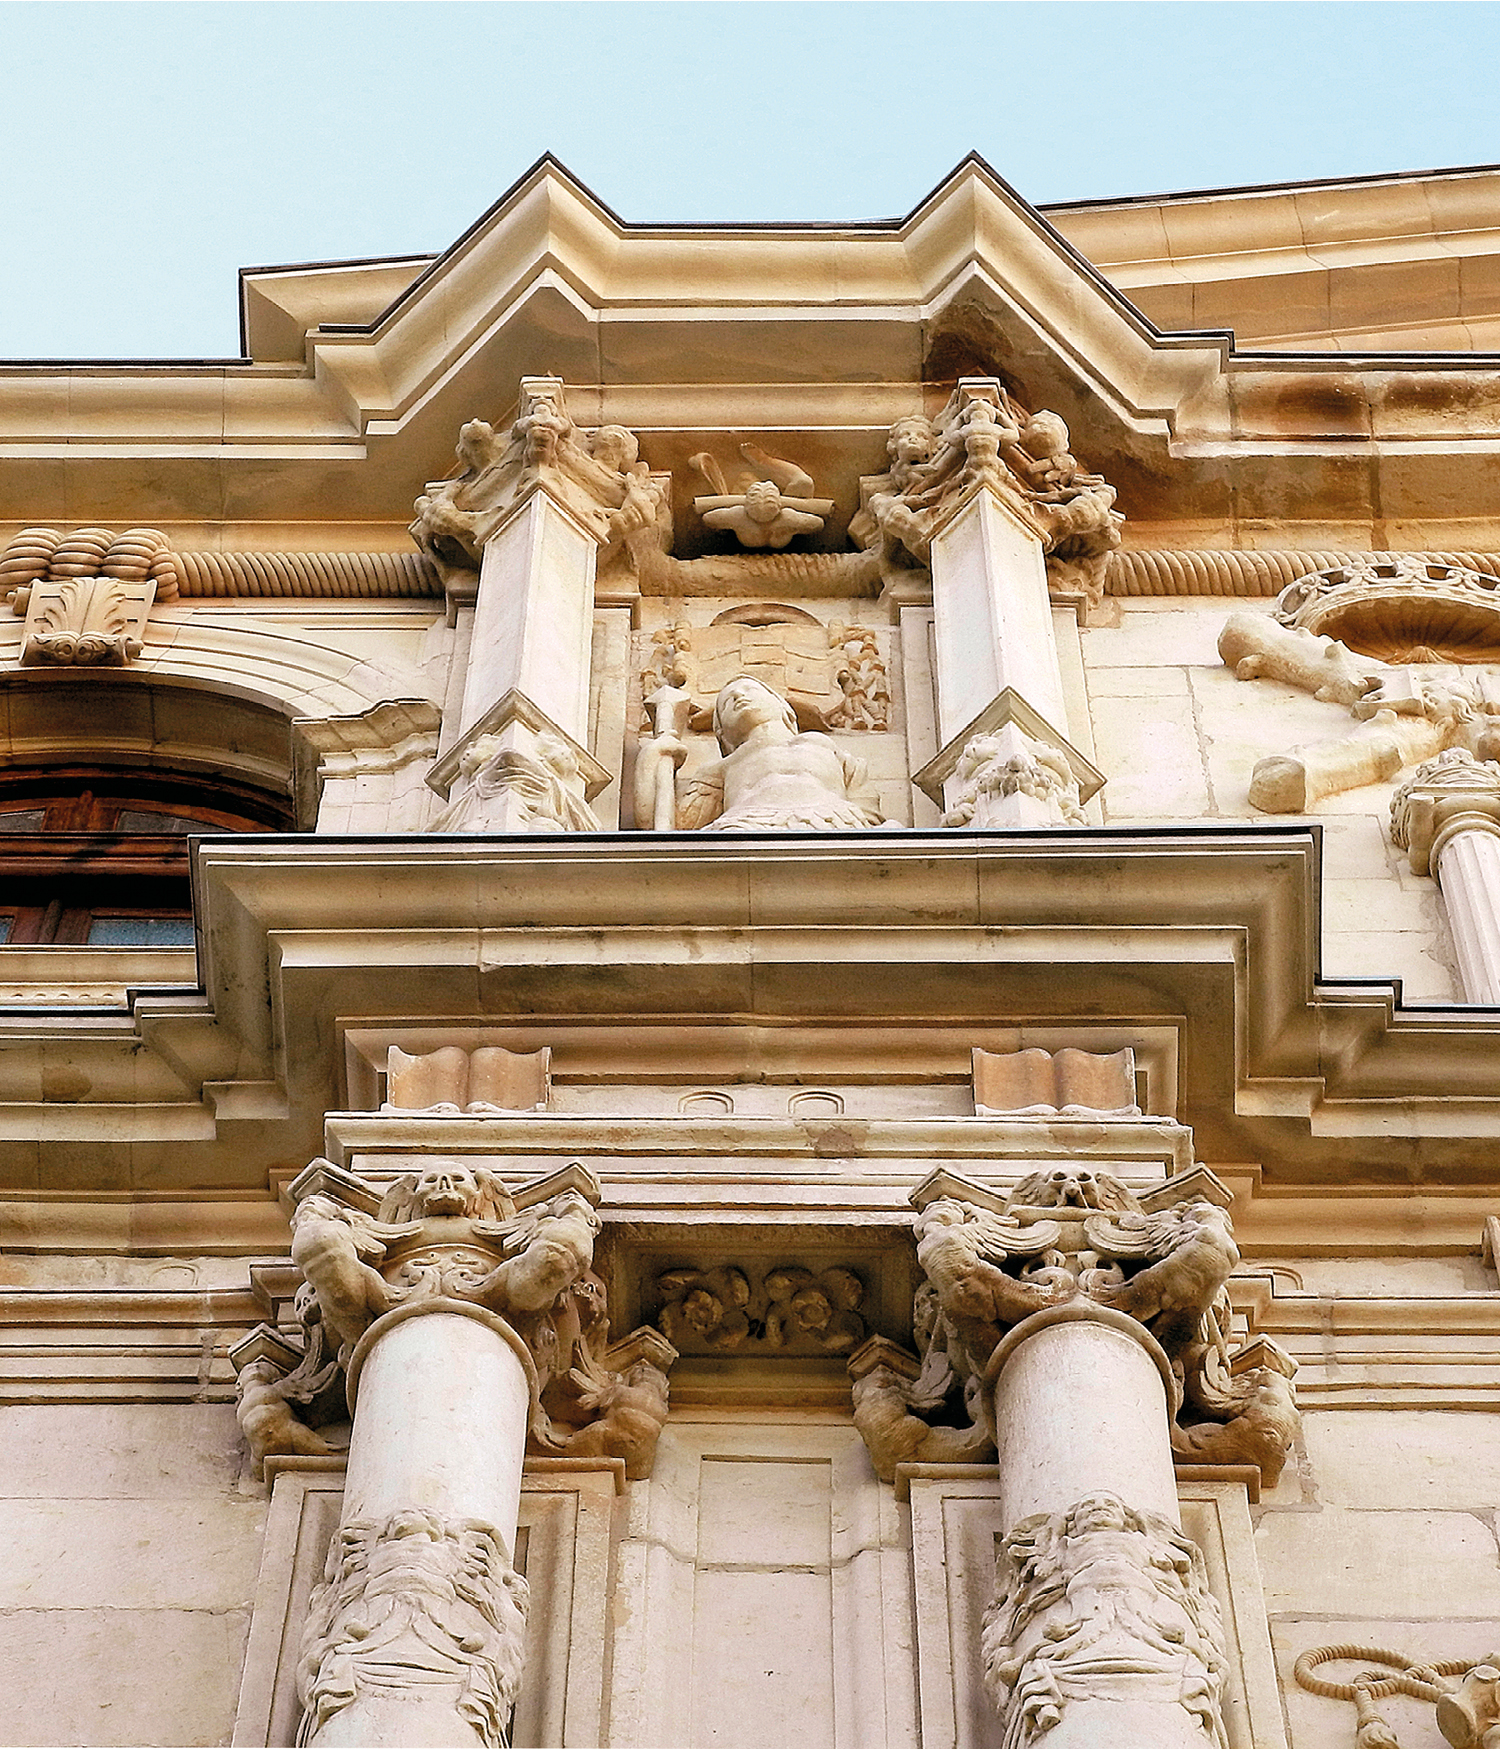 Exposición “La fachada del Colegio Mayor de San Ildefonso. Construcción, evolución y restauraciones